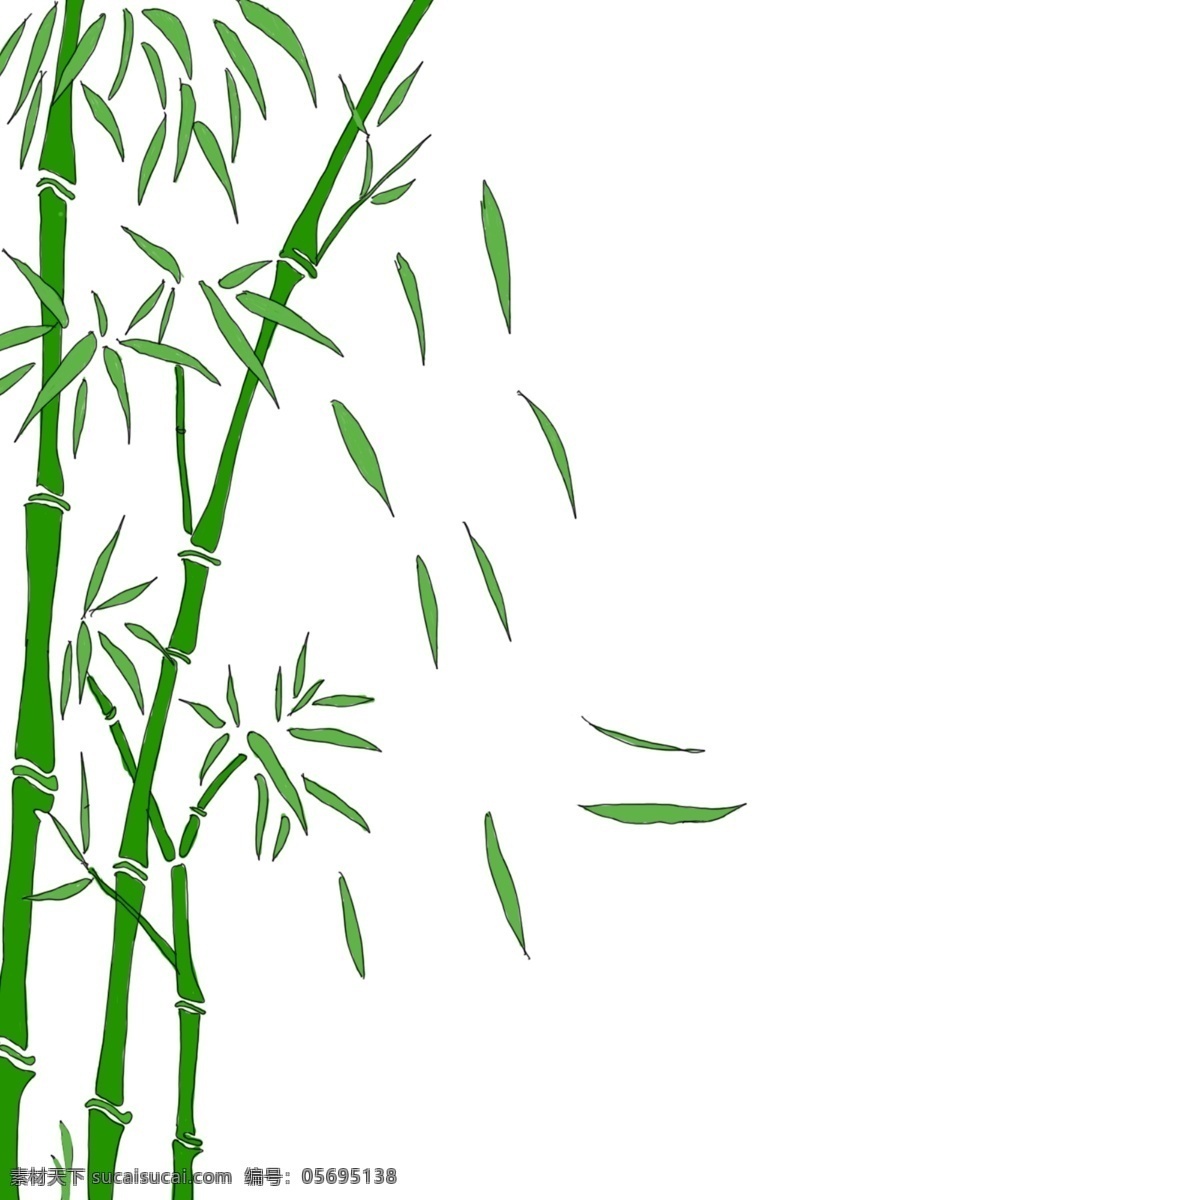 风 飘落 绿色 竹叶 绿色竹叶 飘落的竹叶 随风飘落竹叶